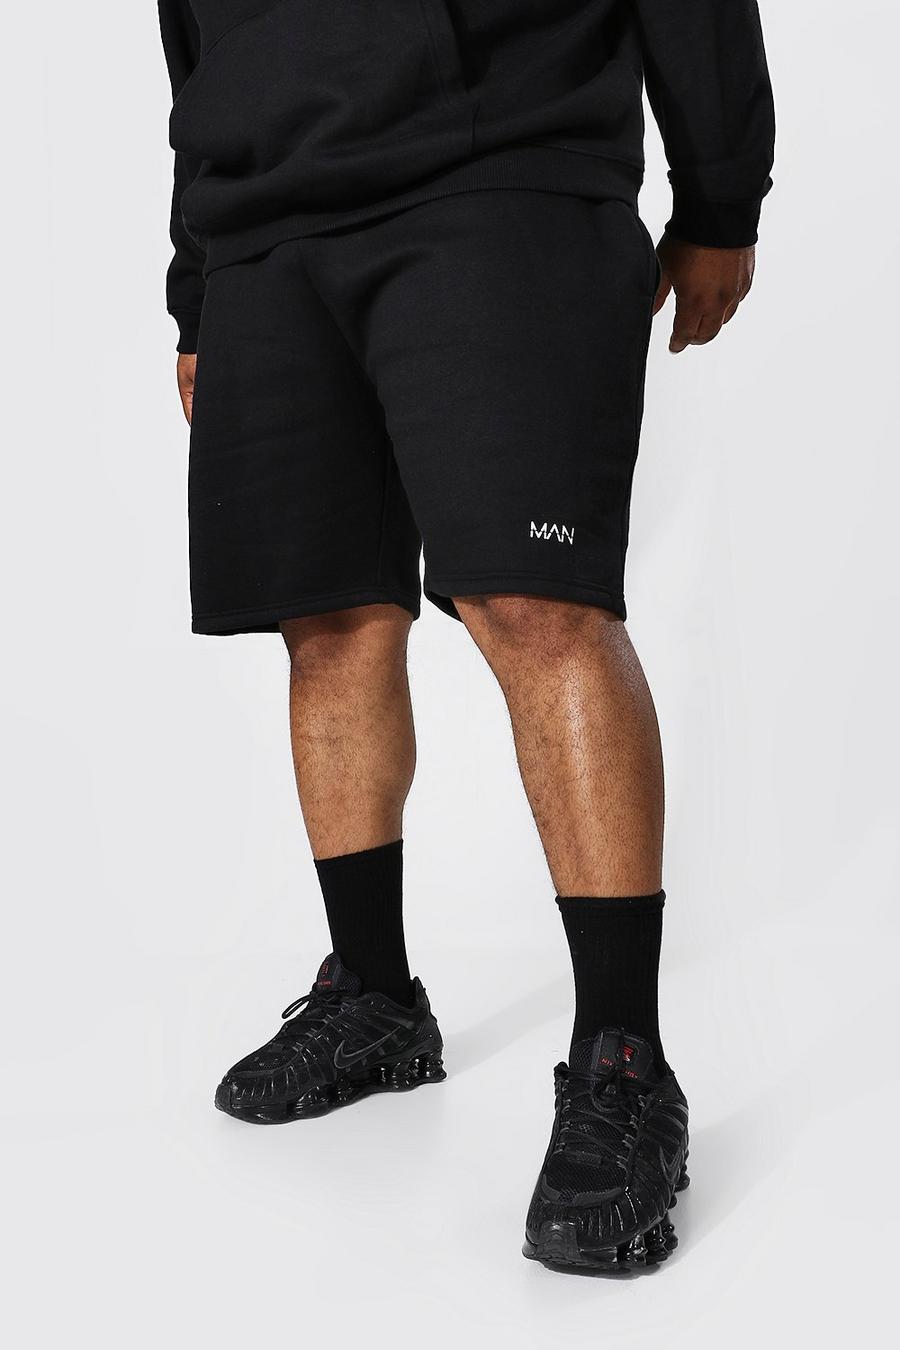 Pantaloncini Plus Size Man Dash in Jersey riciclato, Black nero